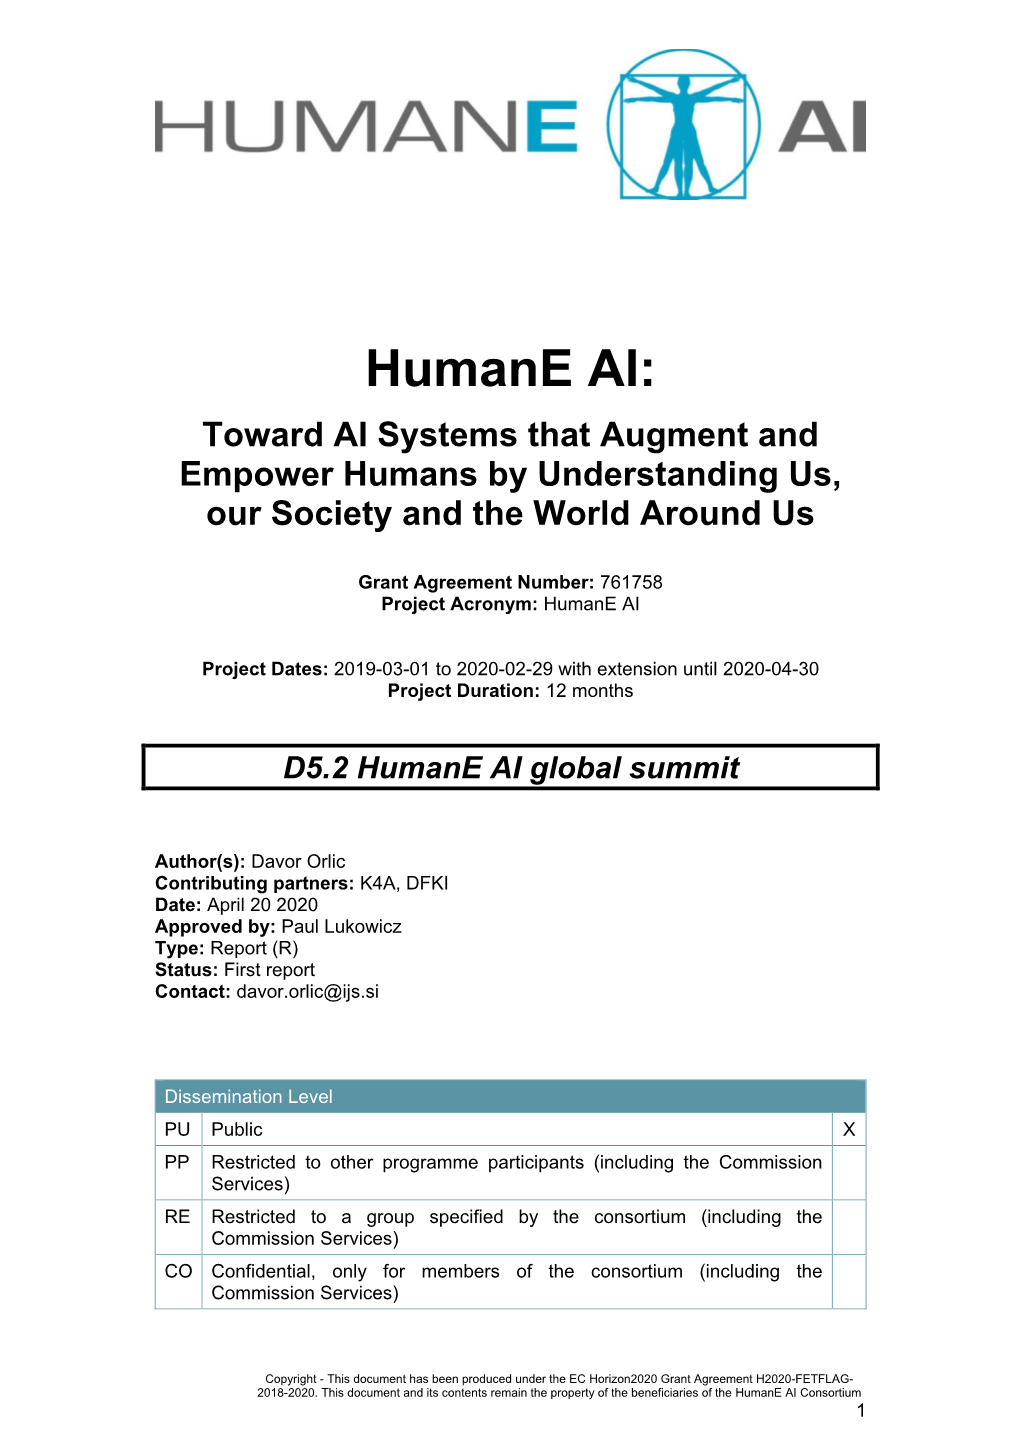 D5.2 Humane AI Global Summit